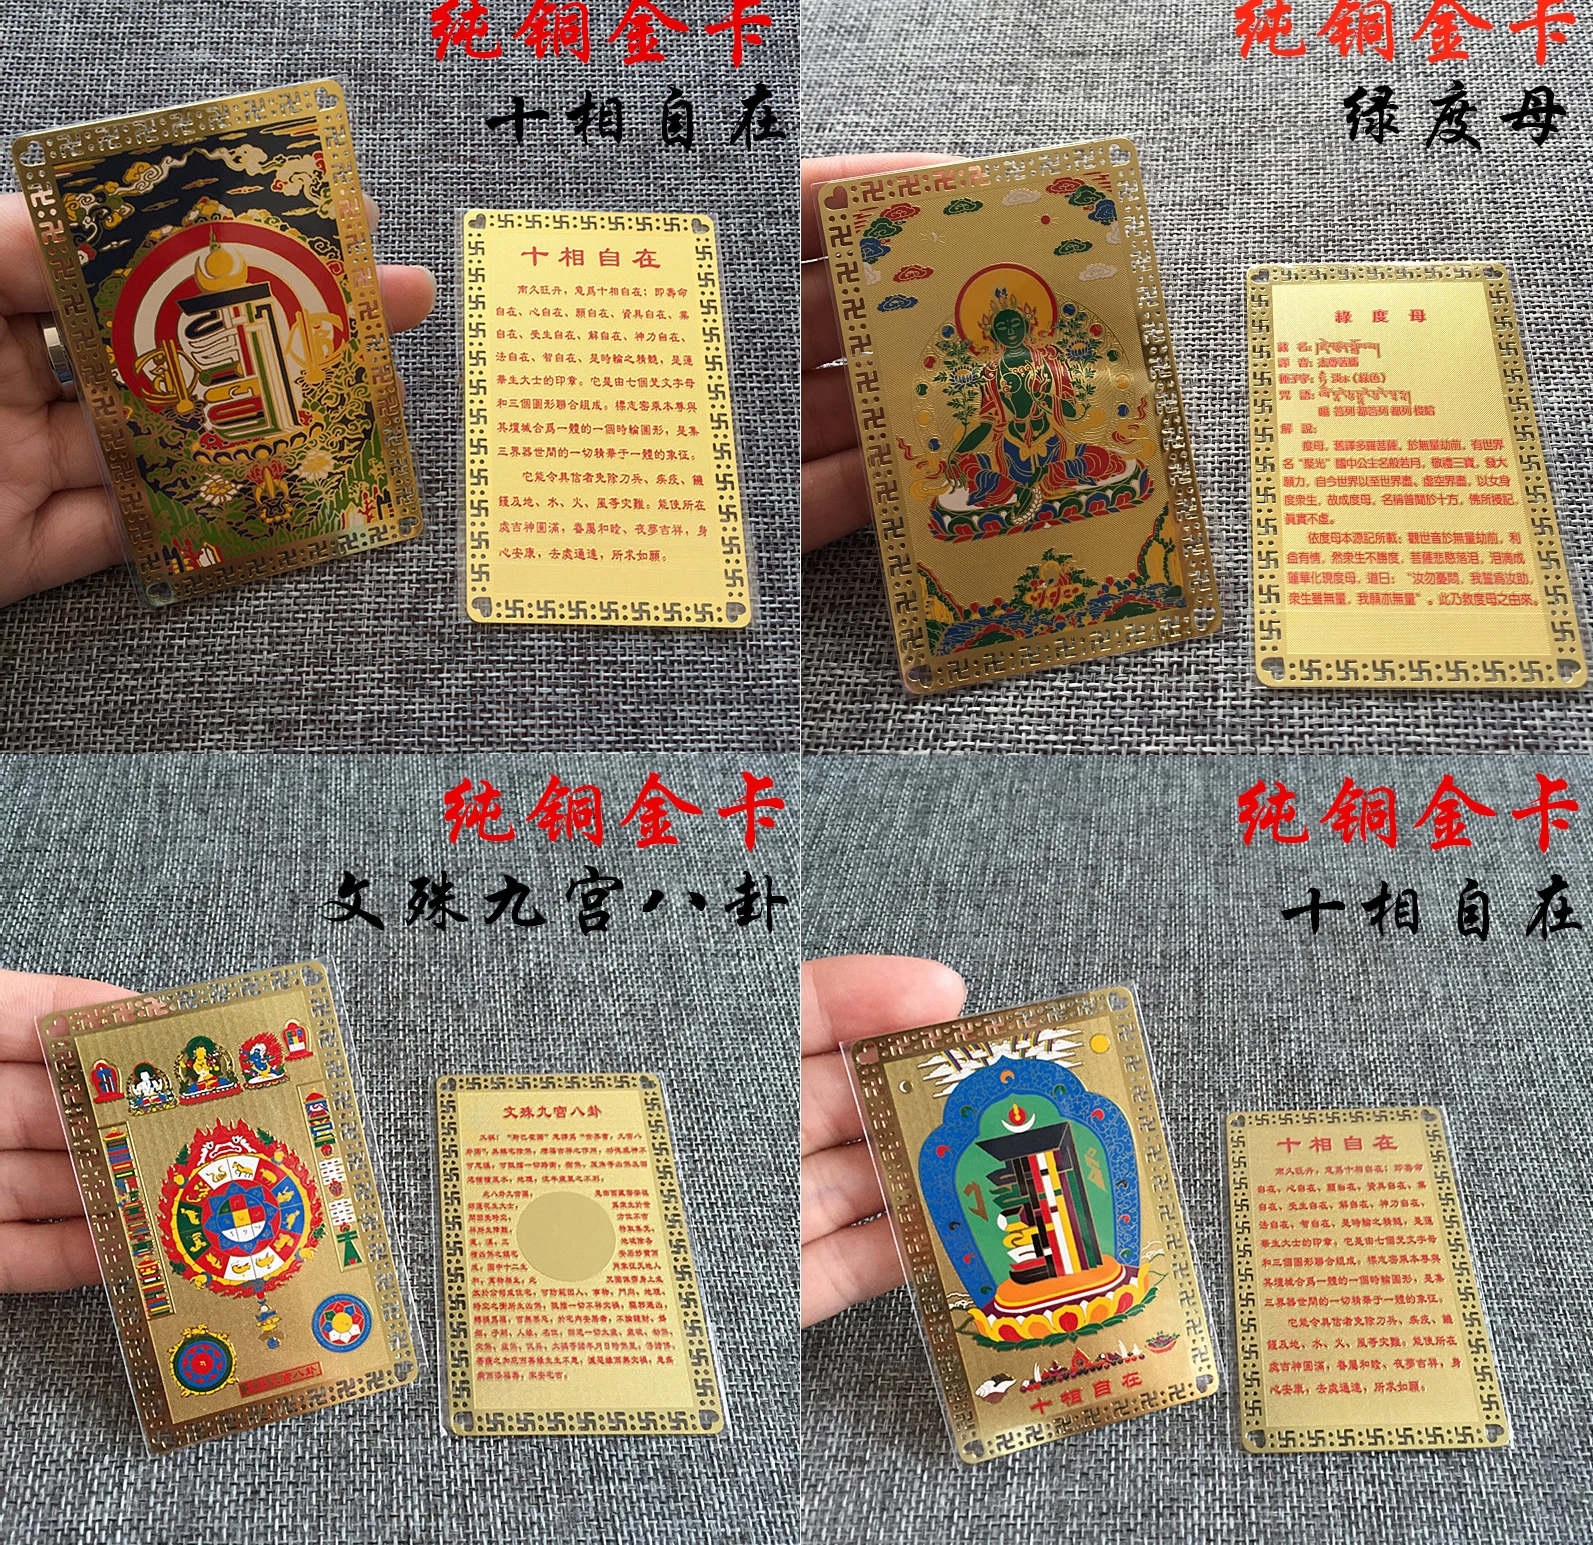 

8PCS # Tibetan Buddhism Nine palace Eight Diagrams Eight Diagrams Kalachakra Green Tara buddha multipurpose talisman Golden Card Amulet Bless you peace good luck